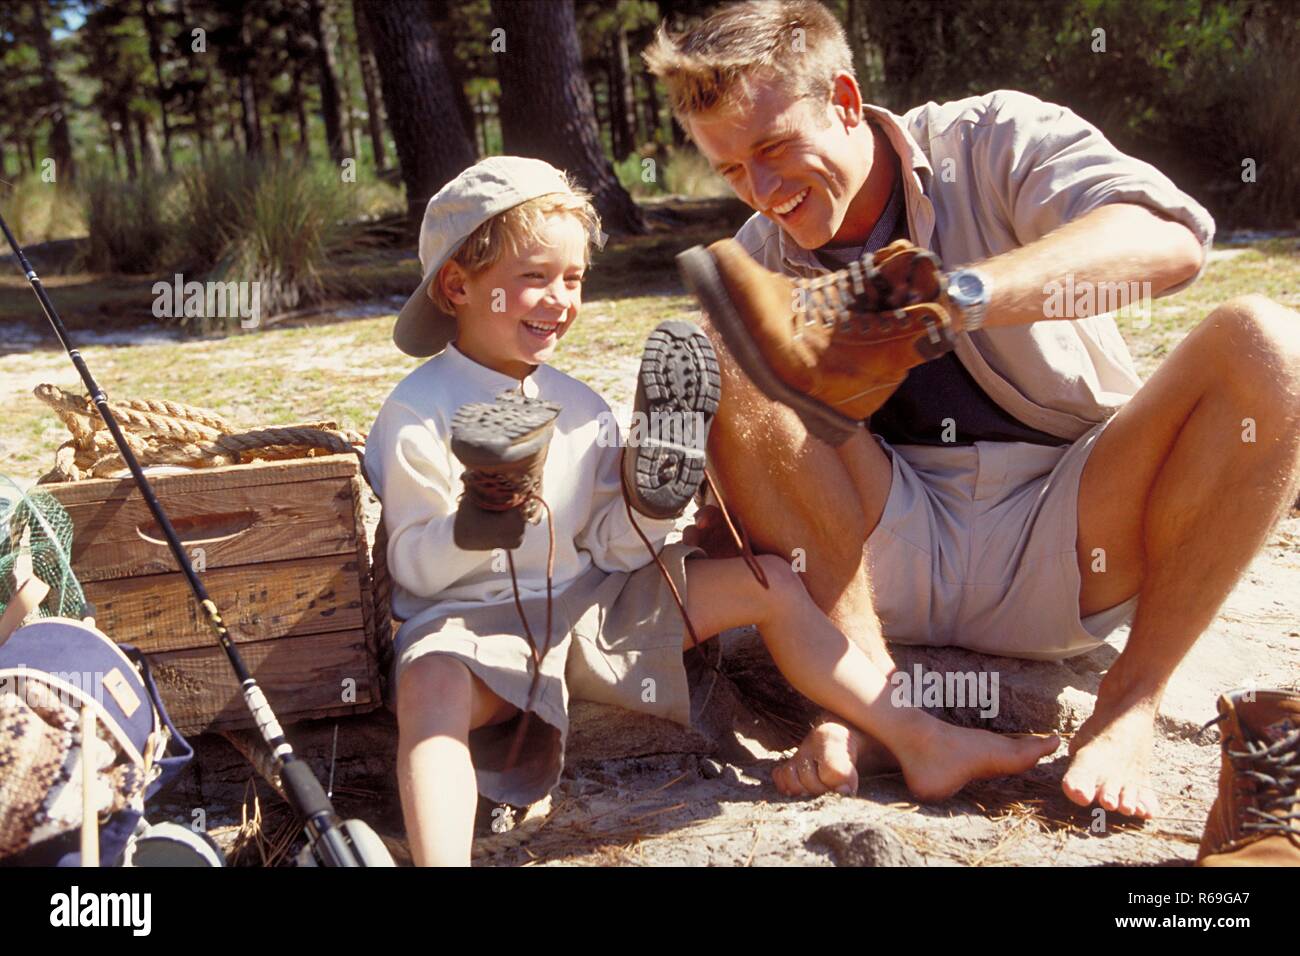 All'aperto, 6 Jahre alter blondr Junge sitzt mit seinem Vater barfuss auf Steinen im Wald und halten gluecklich ihre Wanderschuhe in den Haenden Foto Stock